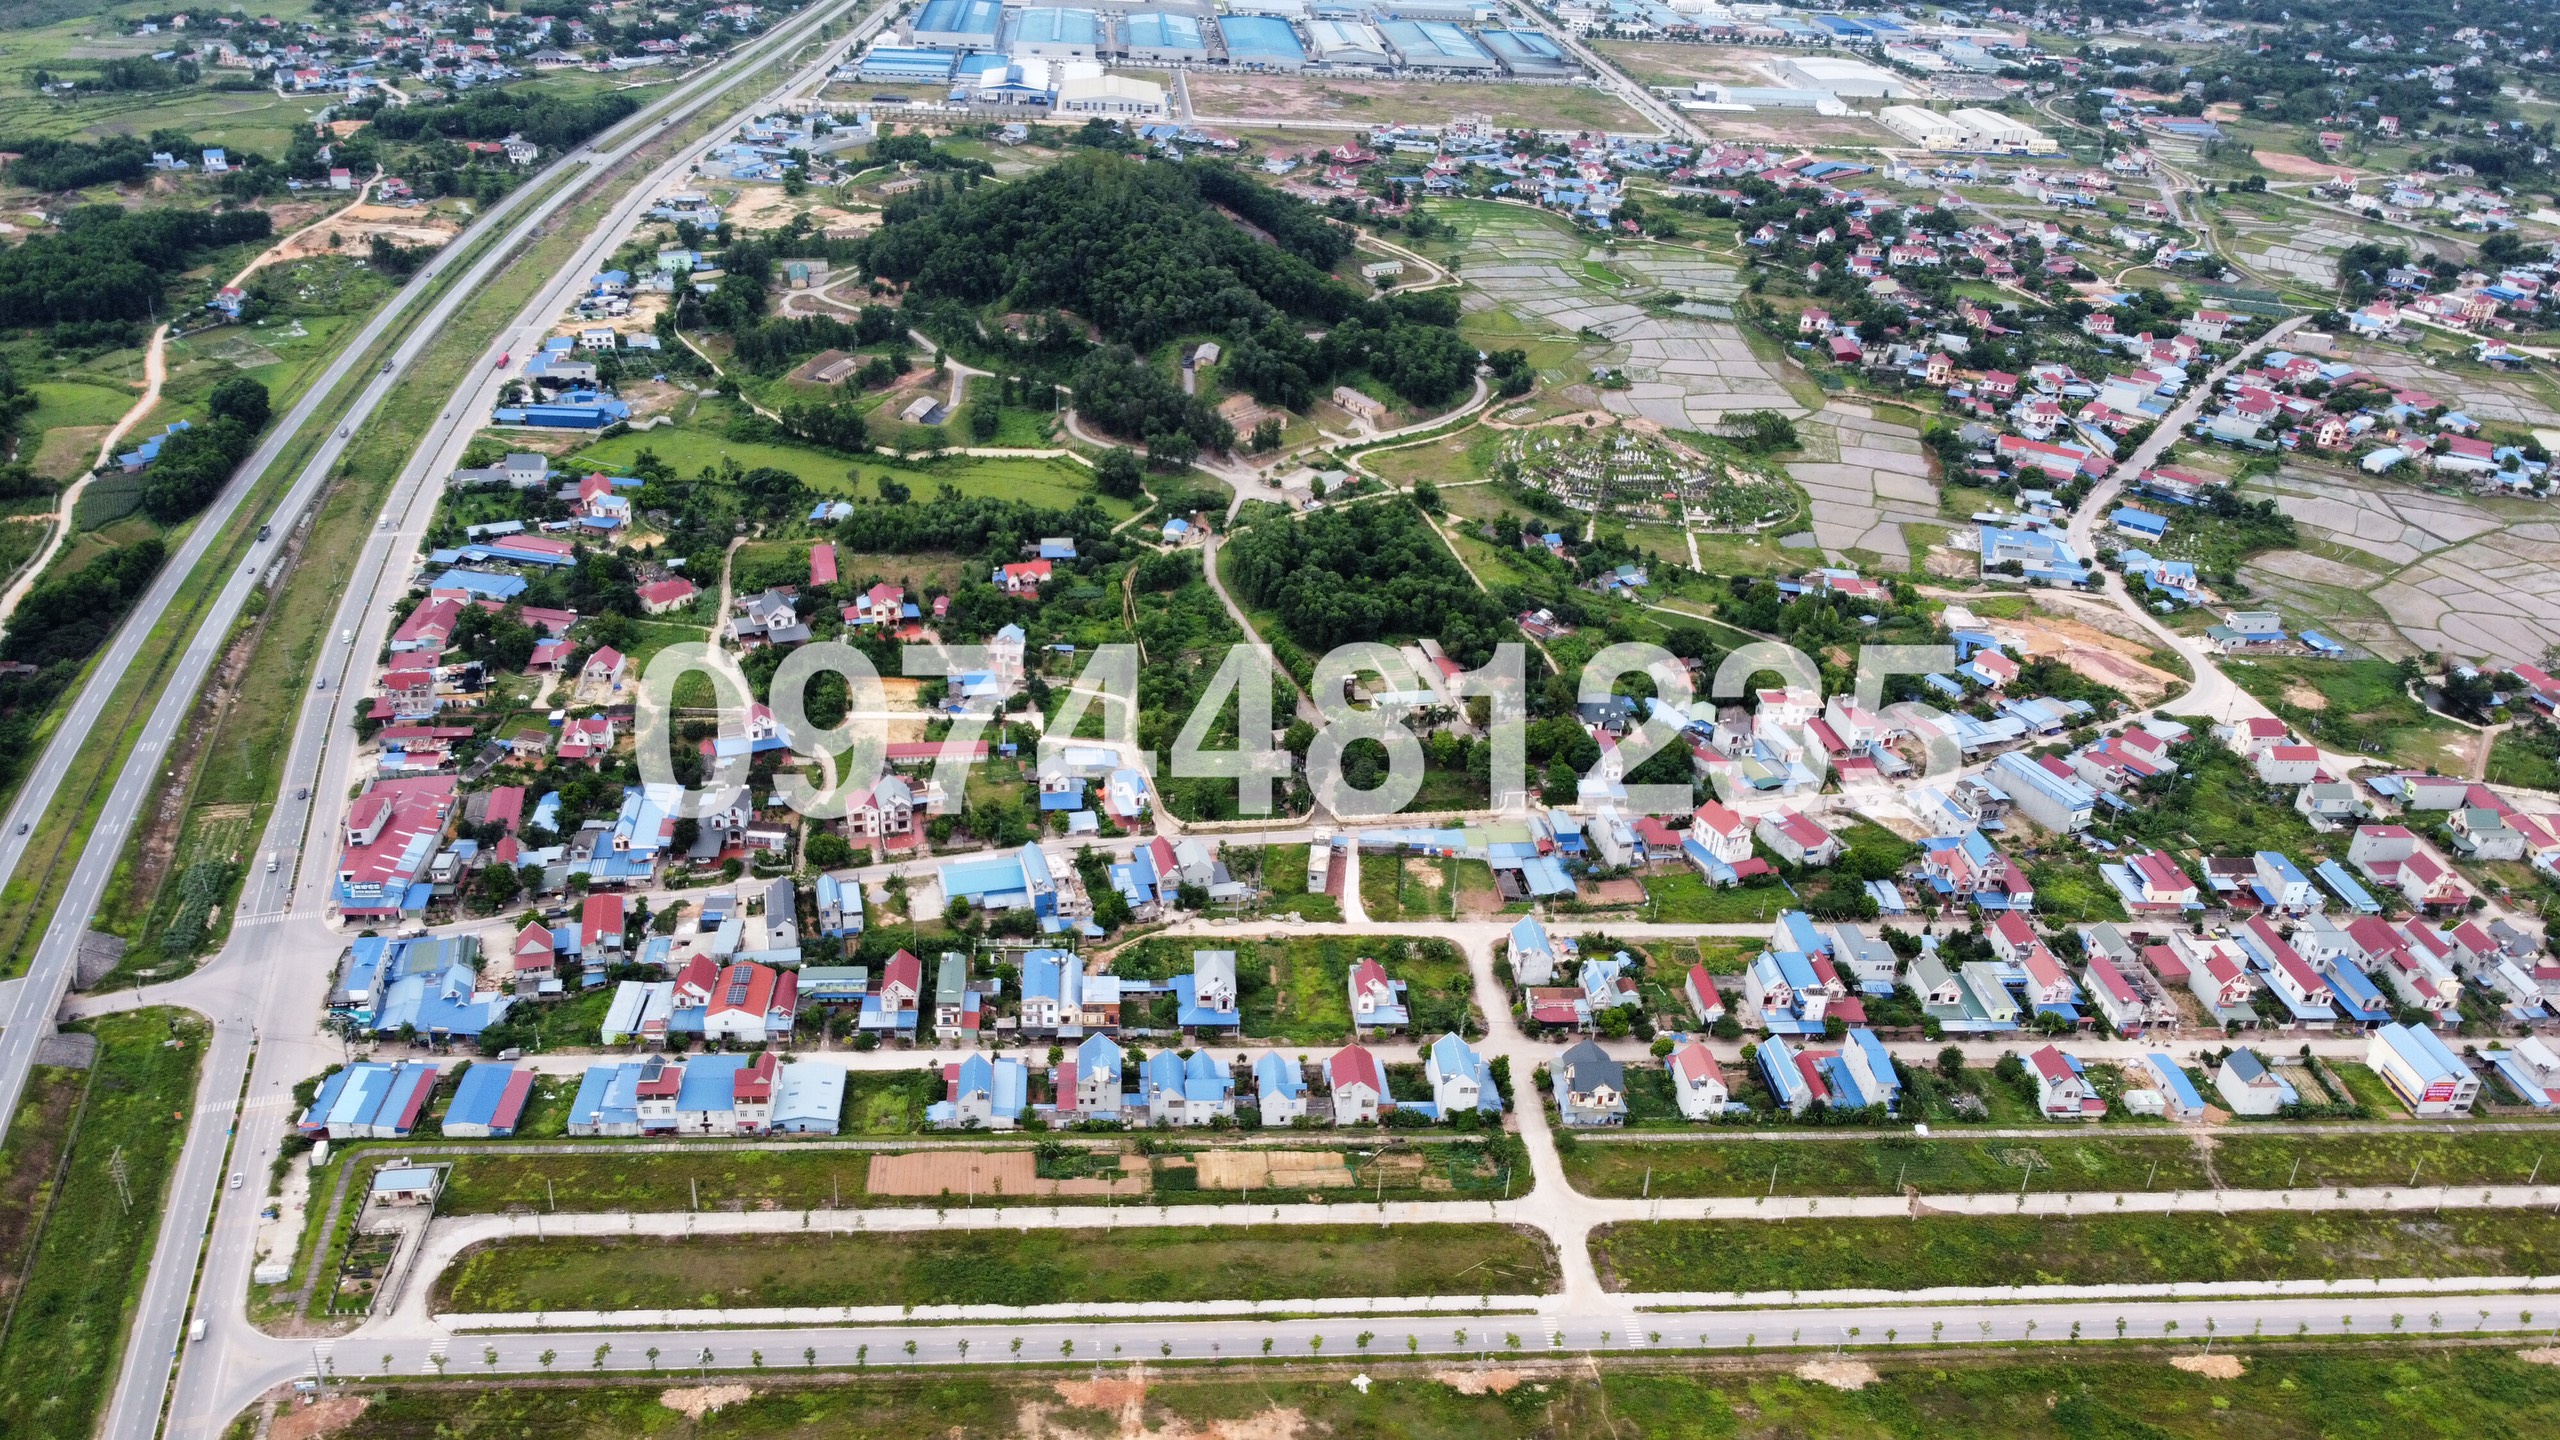 Bán DOM 22 - 08 đất đấu giá Khu dân cư xã Hồng Tiến thị xã Phổ Yên tỉnh Thái Nguyên.